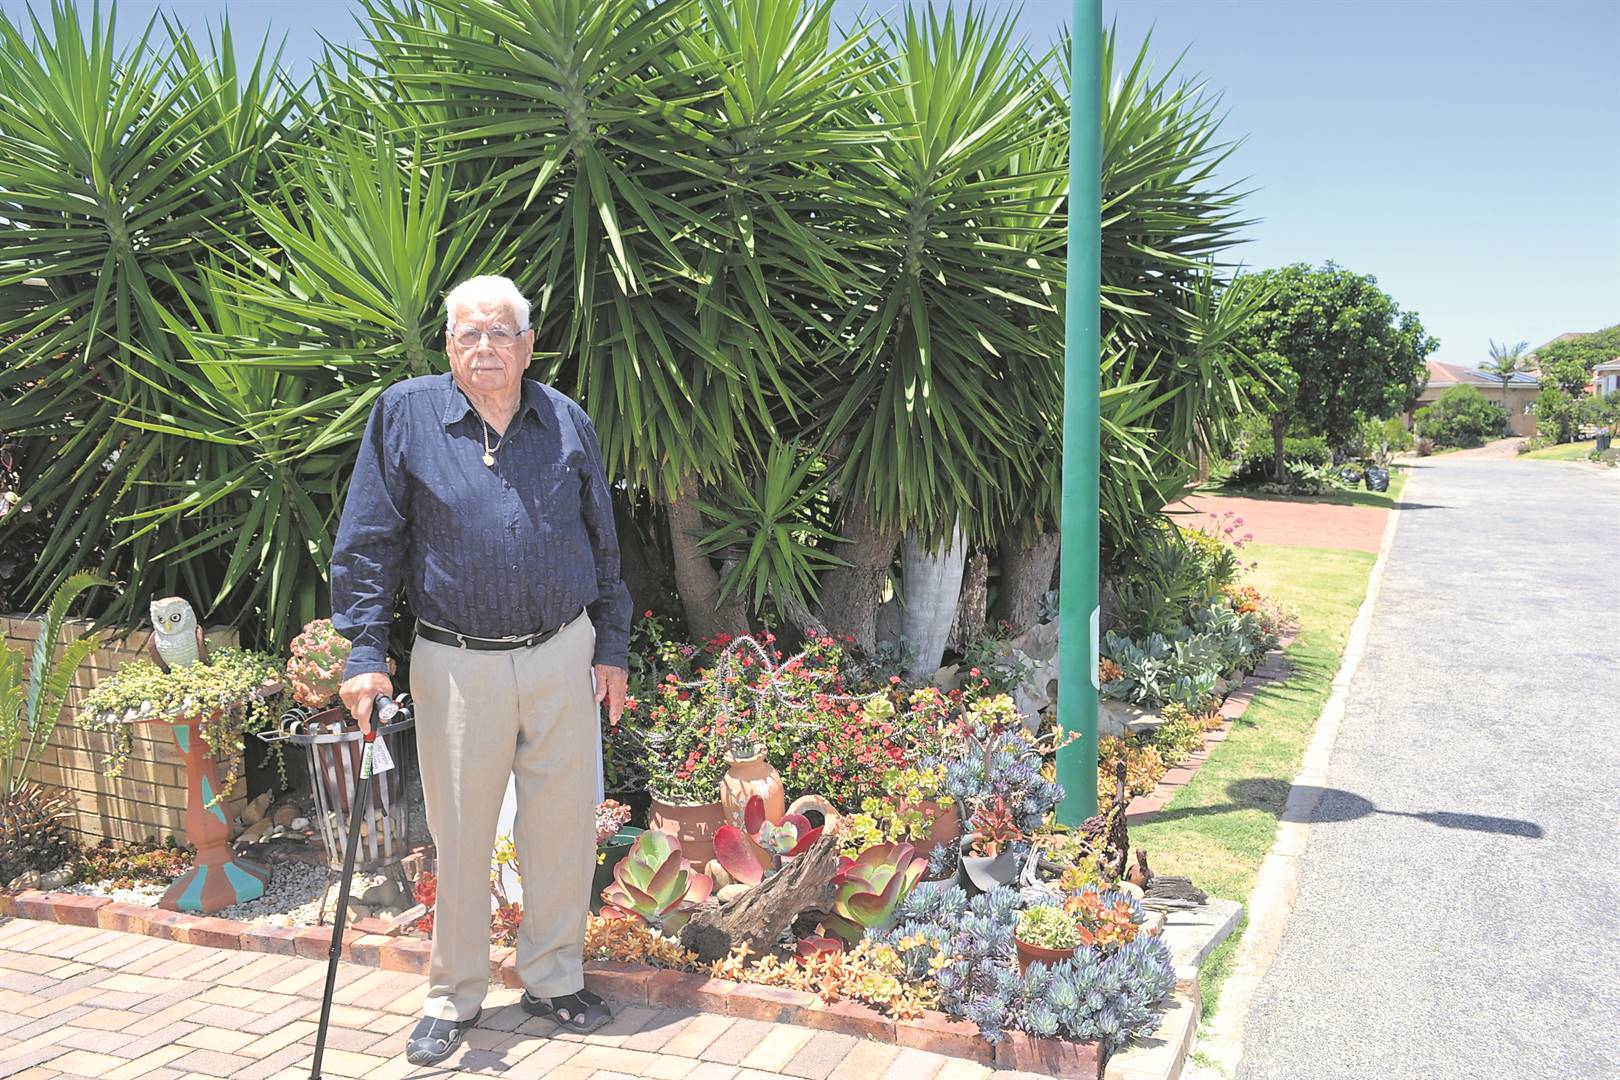 Harry Gerber (94) is the proud winner of the Eedenglen Retirement Village Garden competition.